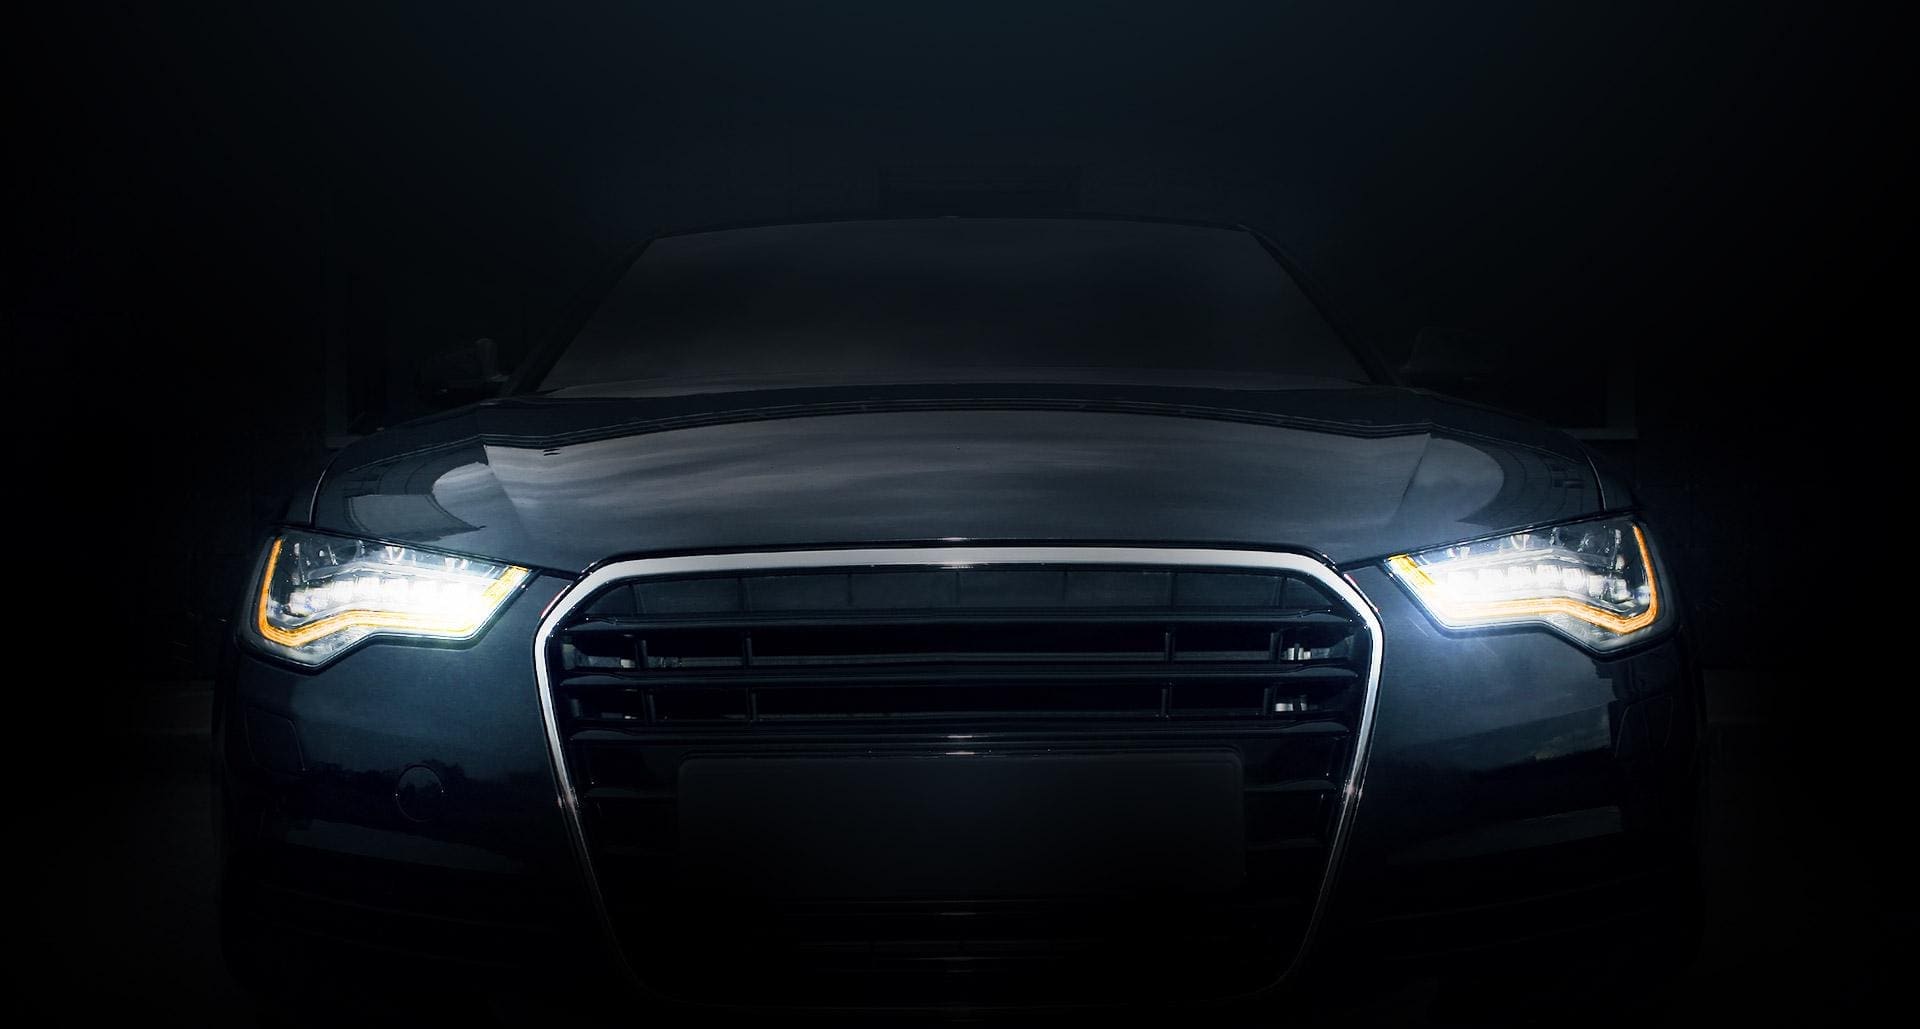 Samochód stojący w ciemności z włączonymi światłami